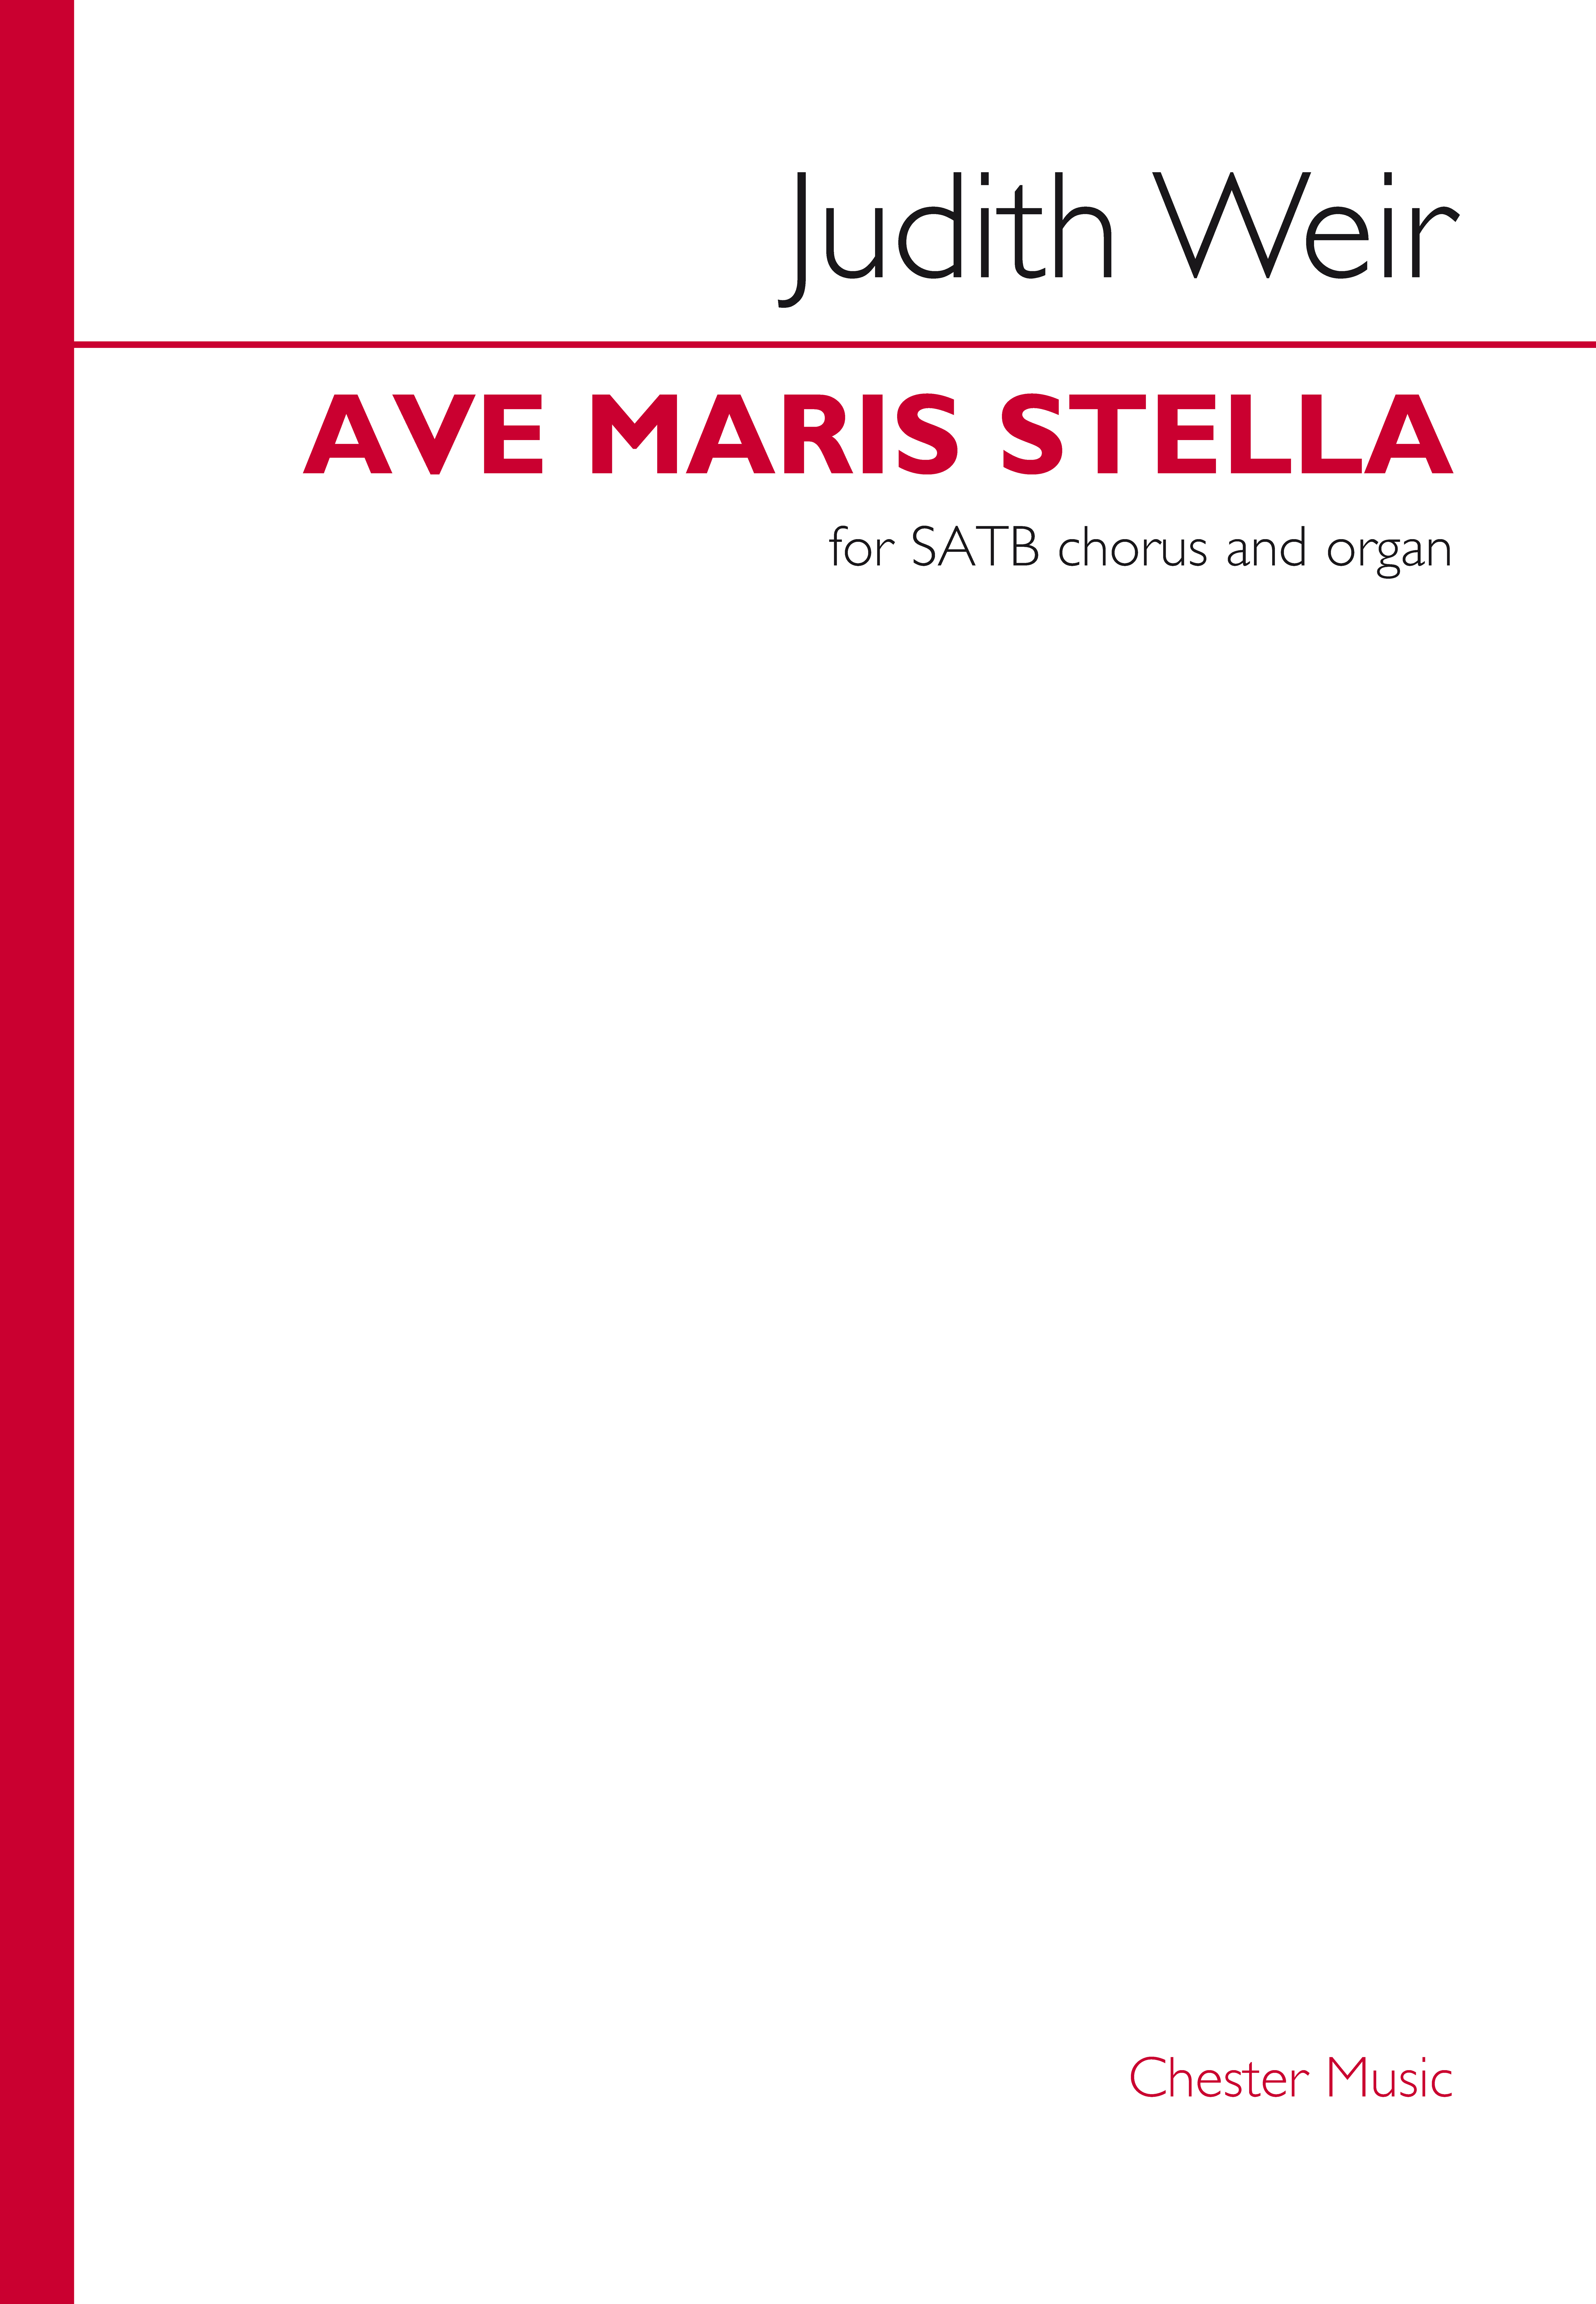 Judith Weir: Ave maris stella: Mixed Choir and Piano/Organ: Choral Score